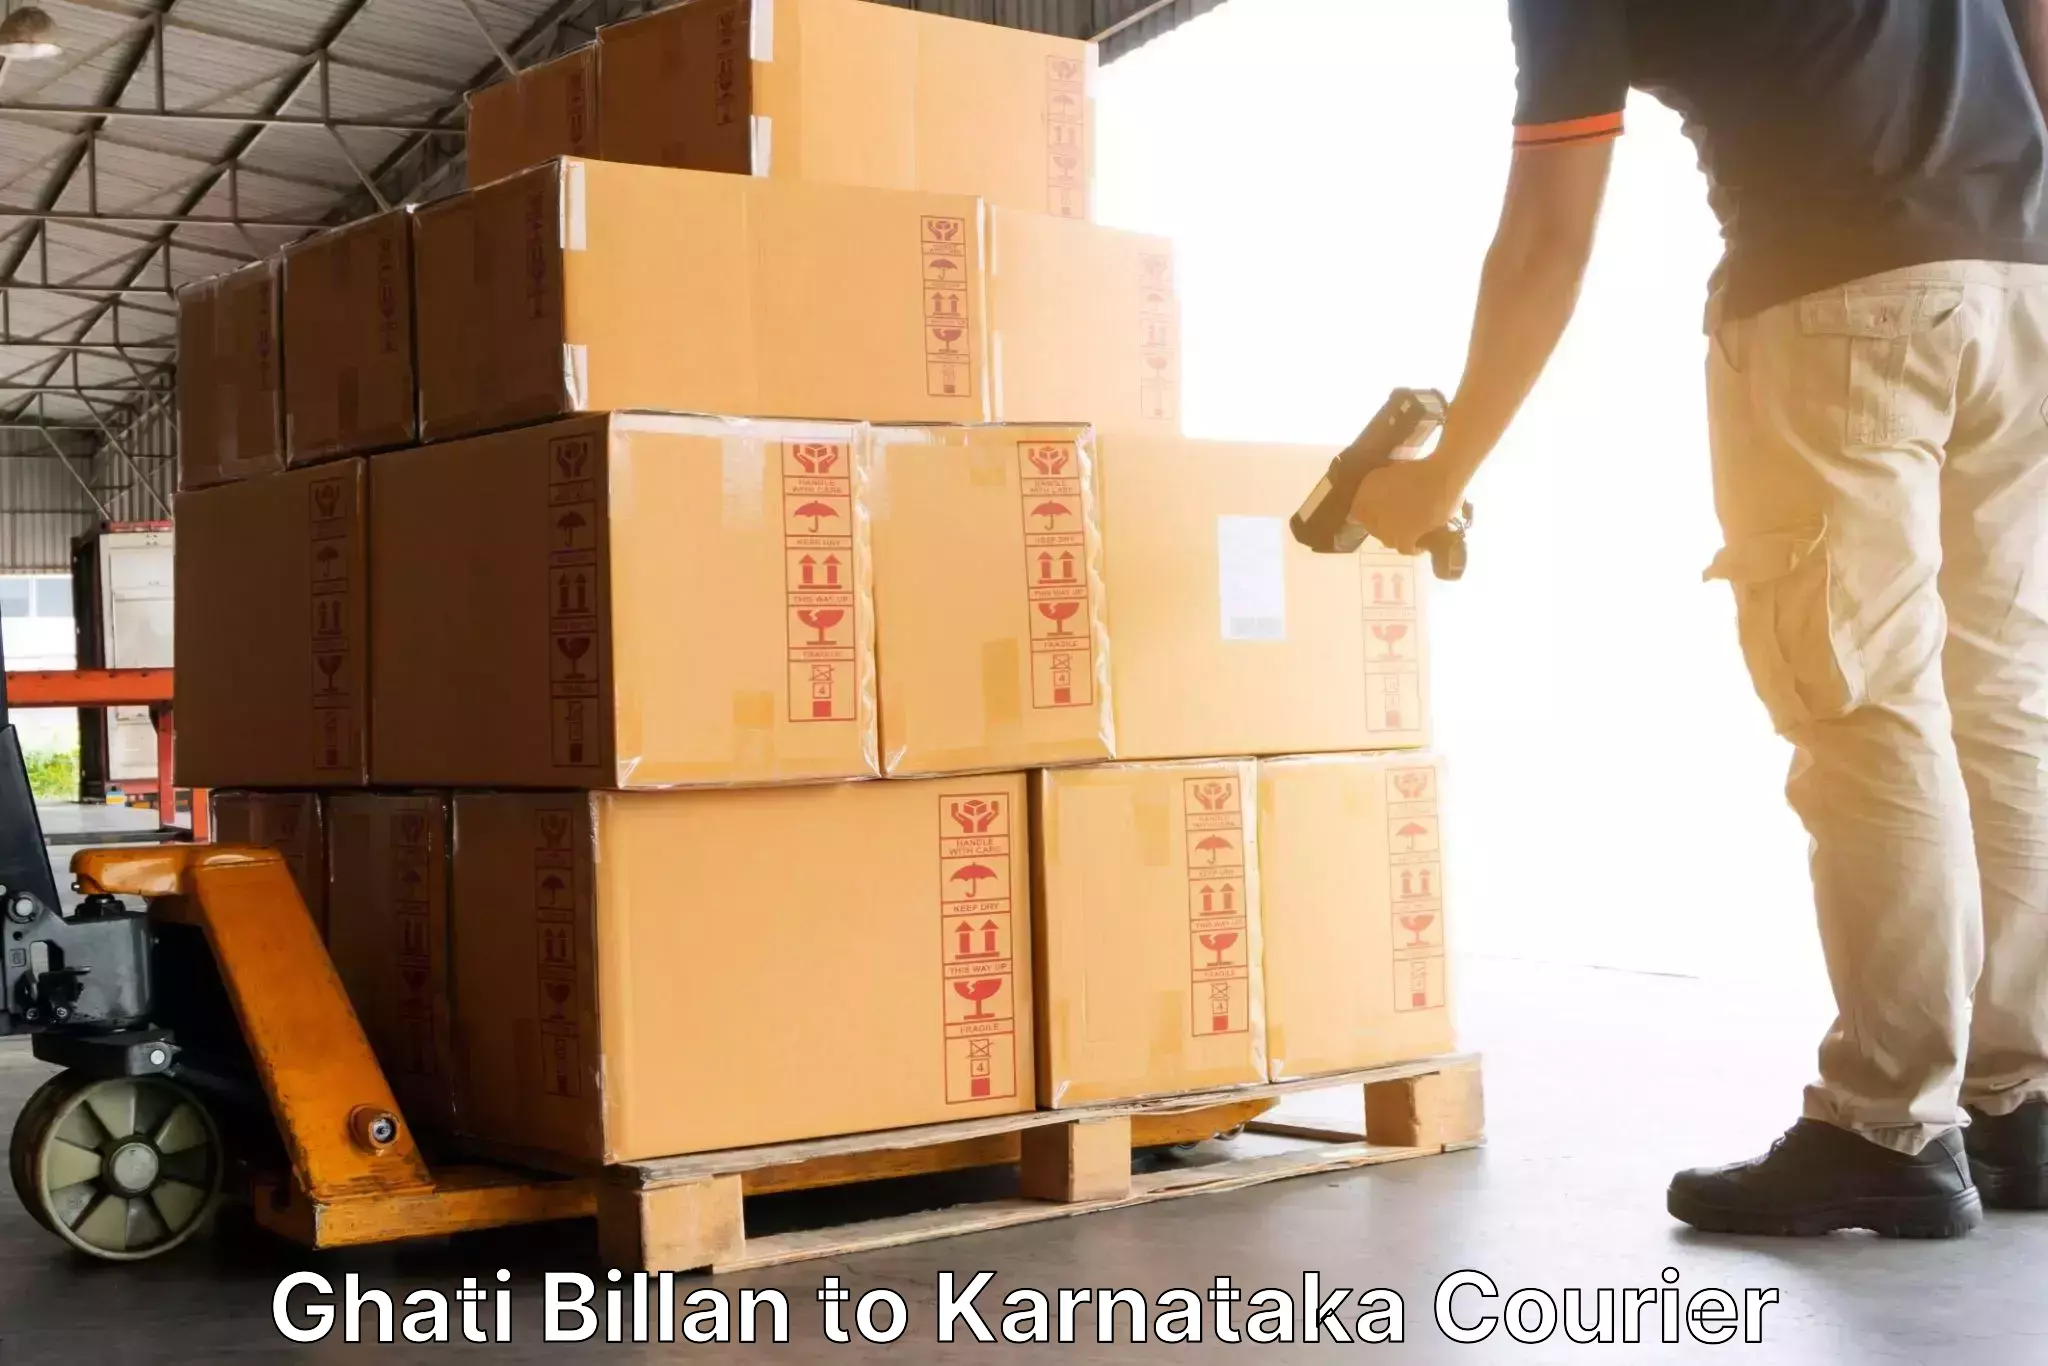 Cargo courier service Ghati Billan to Srirangapatna